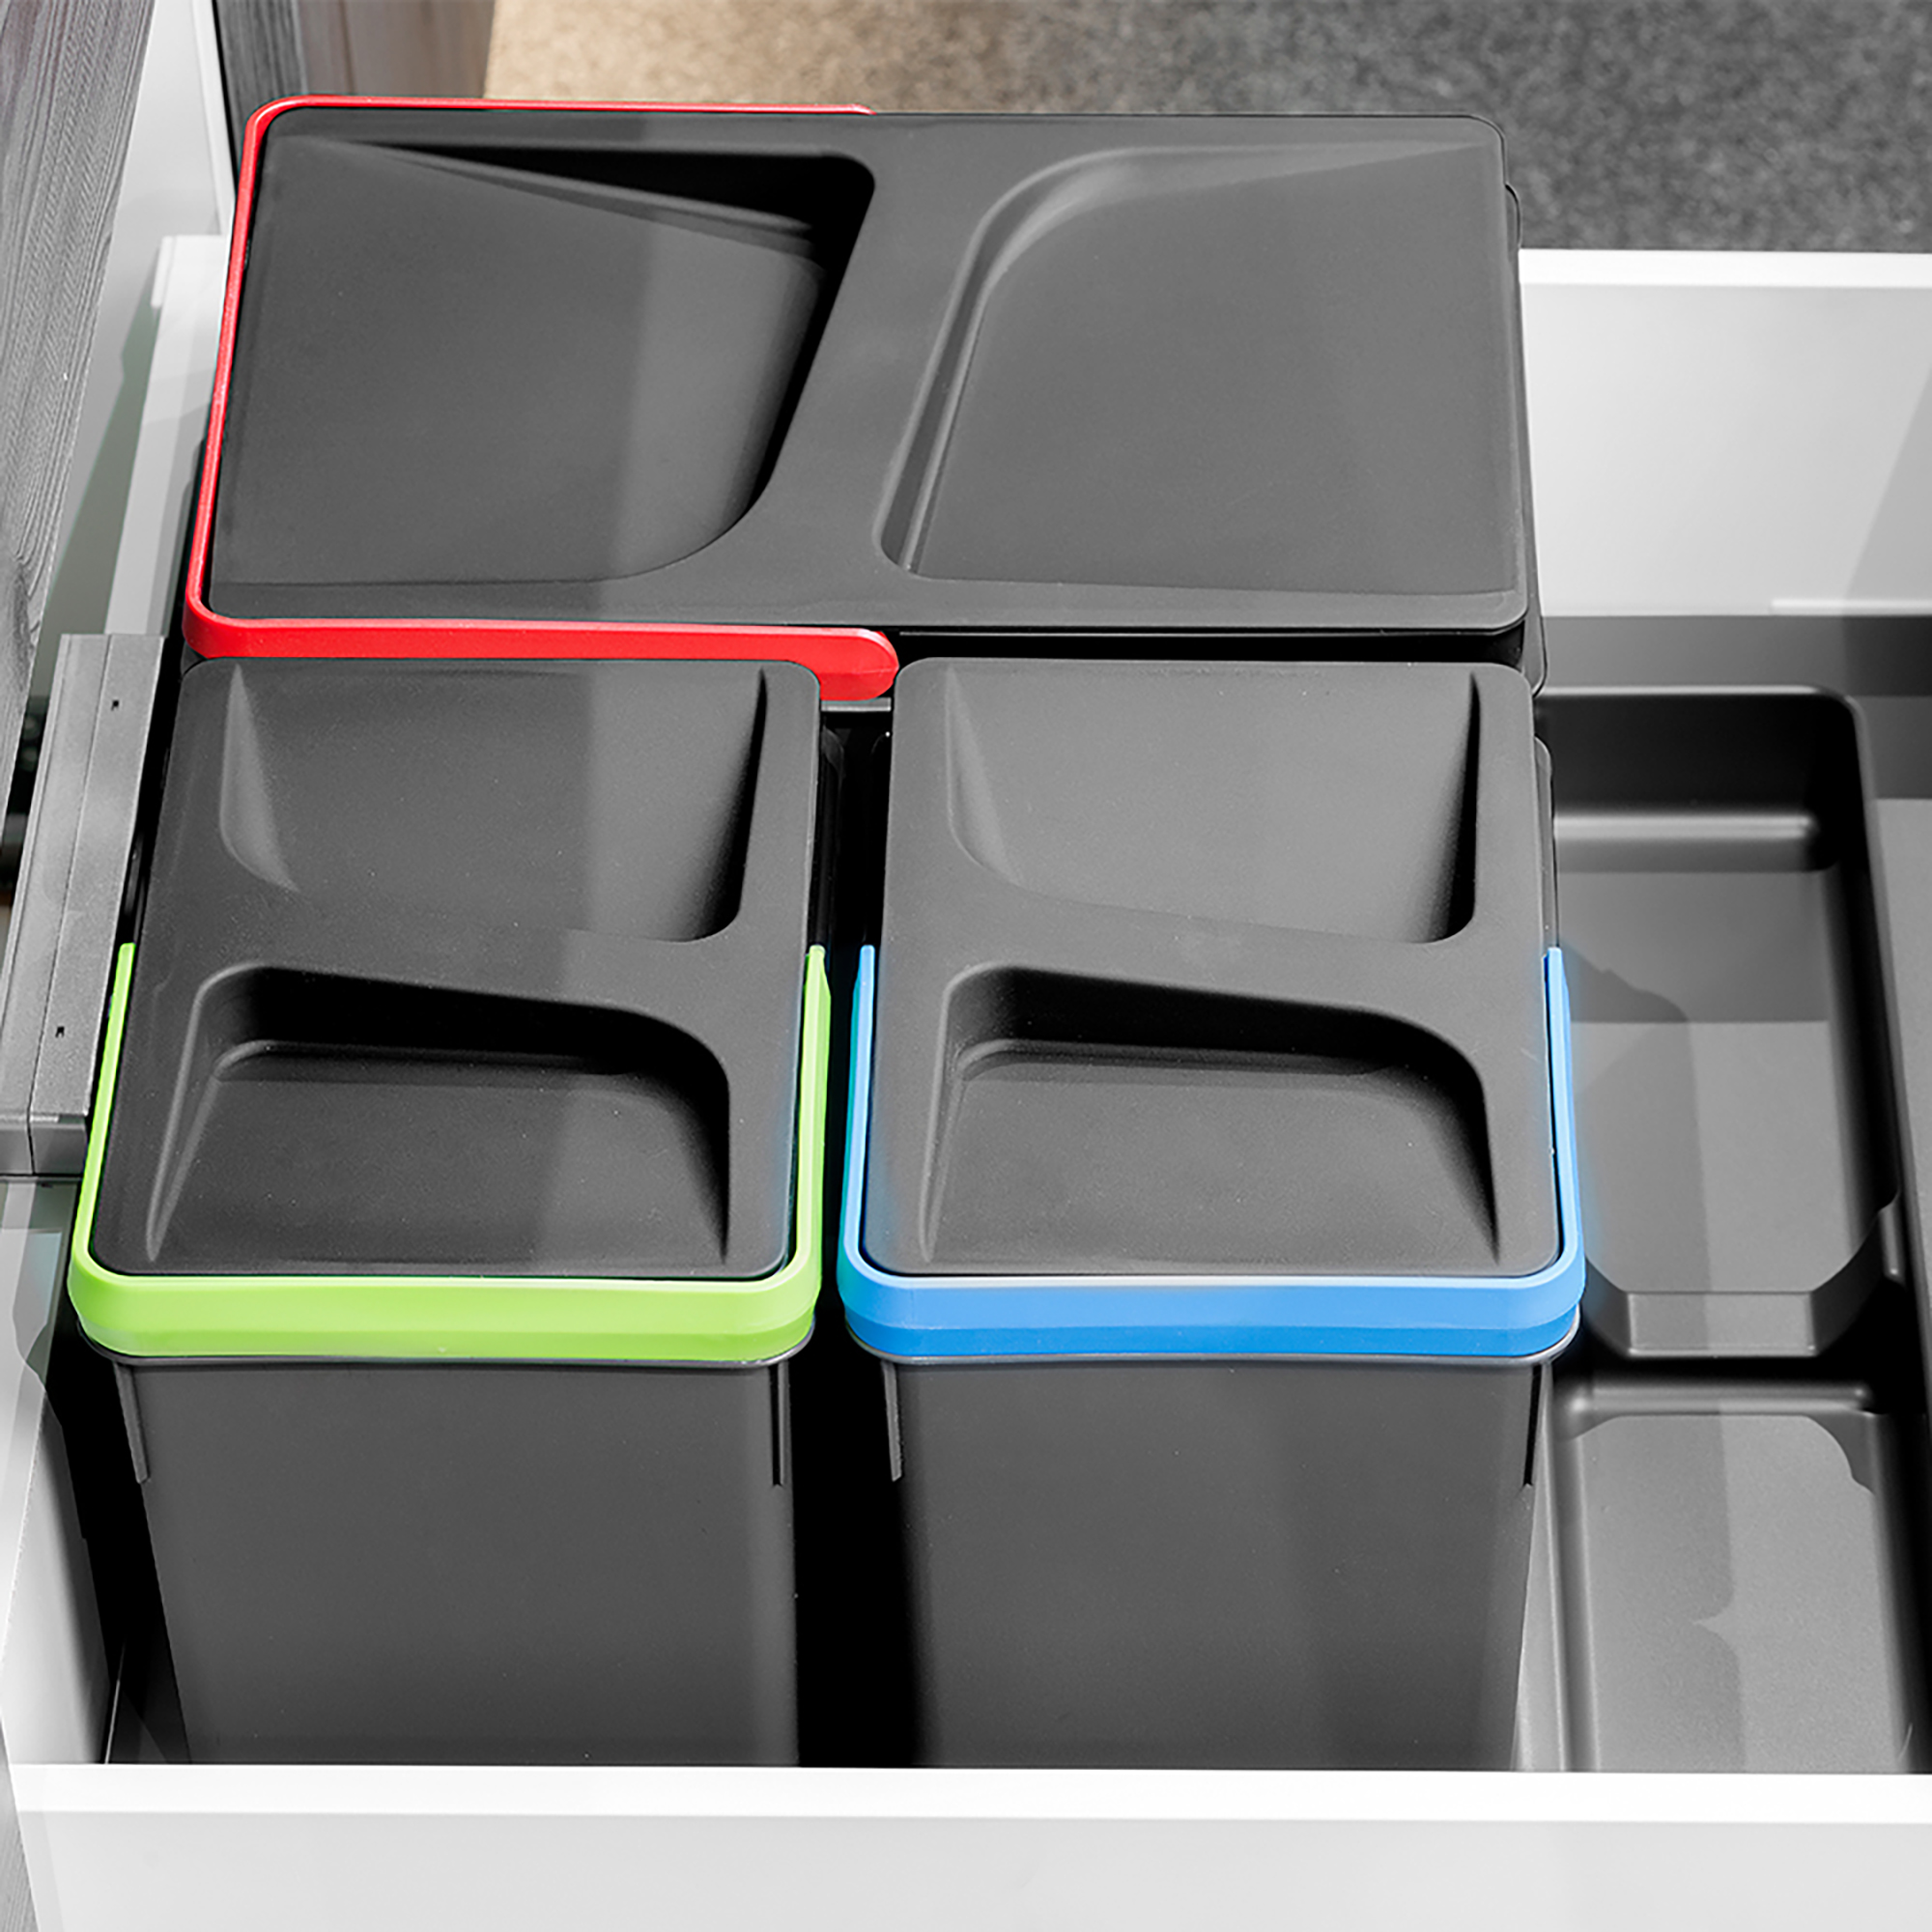  Poubelles pour tiroir de cuisine Recycle, Hauteur 266, 1x15 + 2x7, Plastique gris antracite, Plastique.